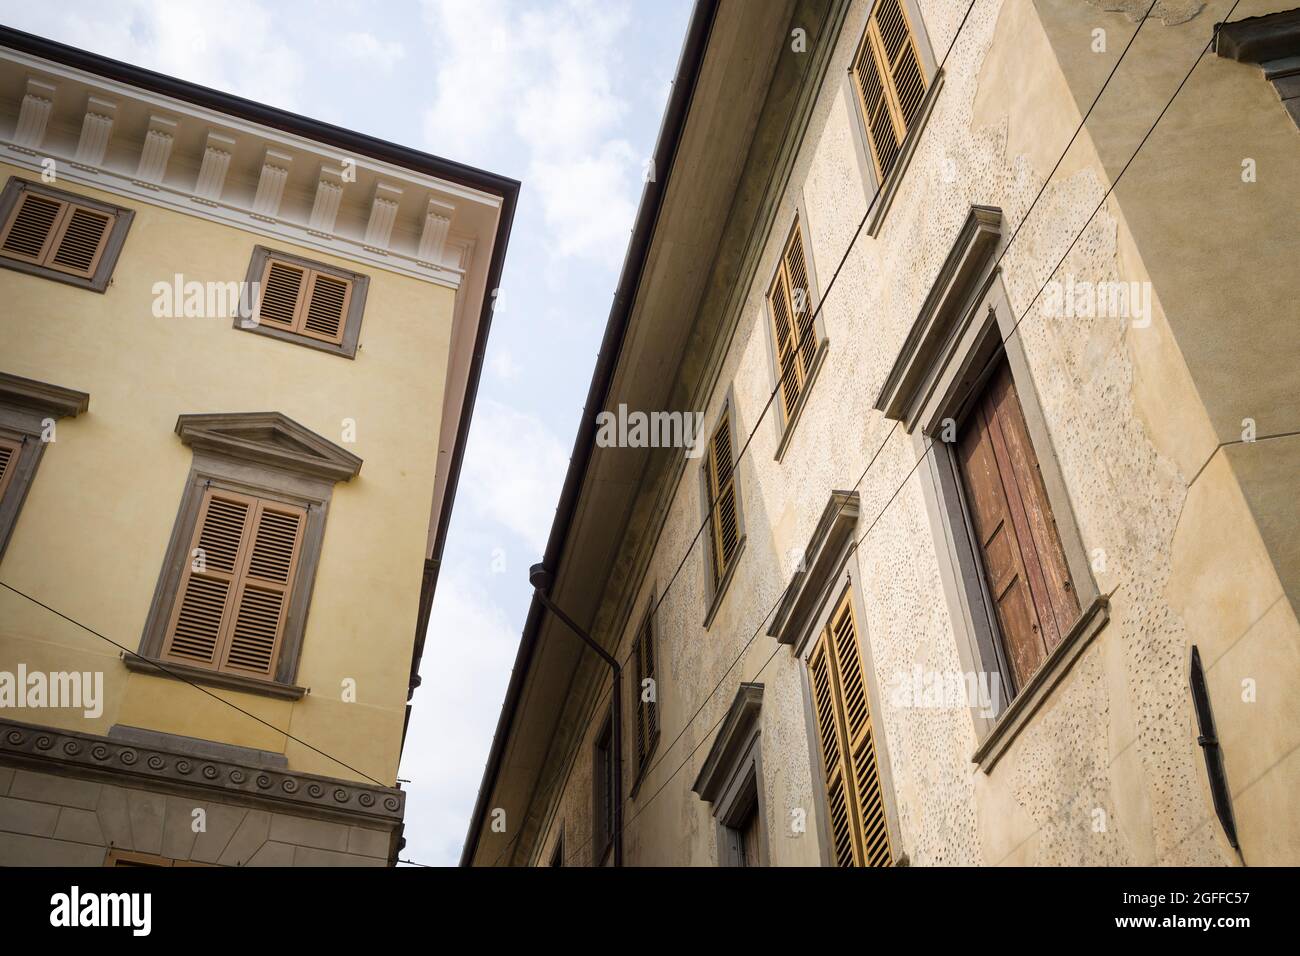 Citta Alta, Bergame, Italie: Scène typique de rue, un coin entre deux palazzos avec des fenêtres à volets. Banque D'Images